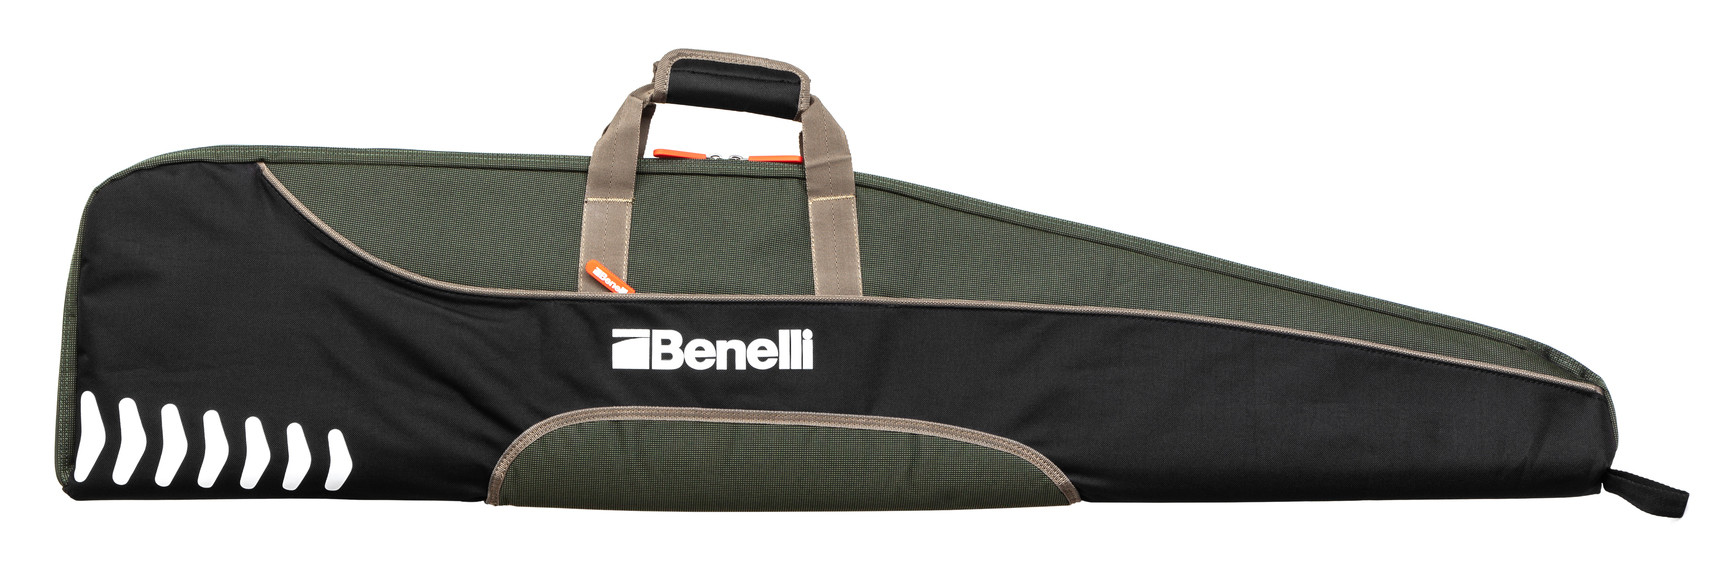 Чехол Benelli для гладкоствольного ружья 123 см